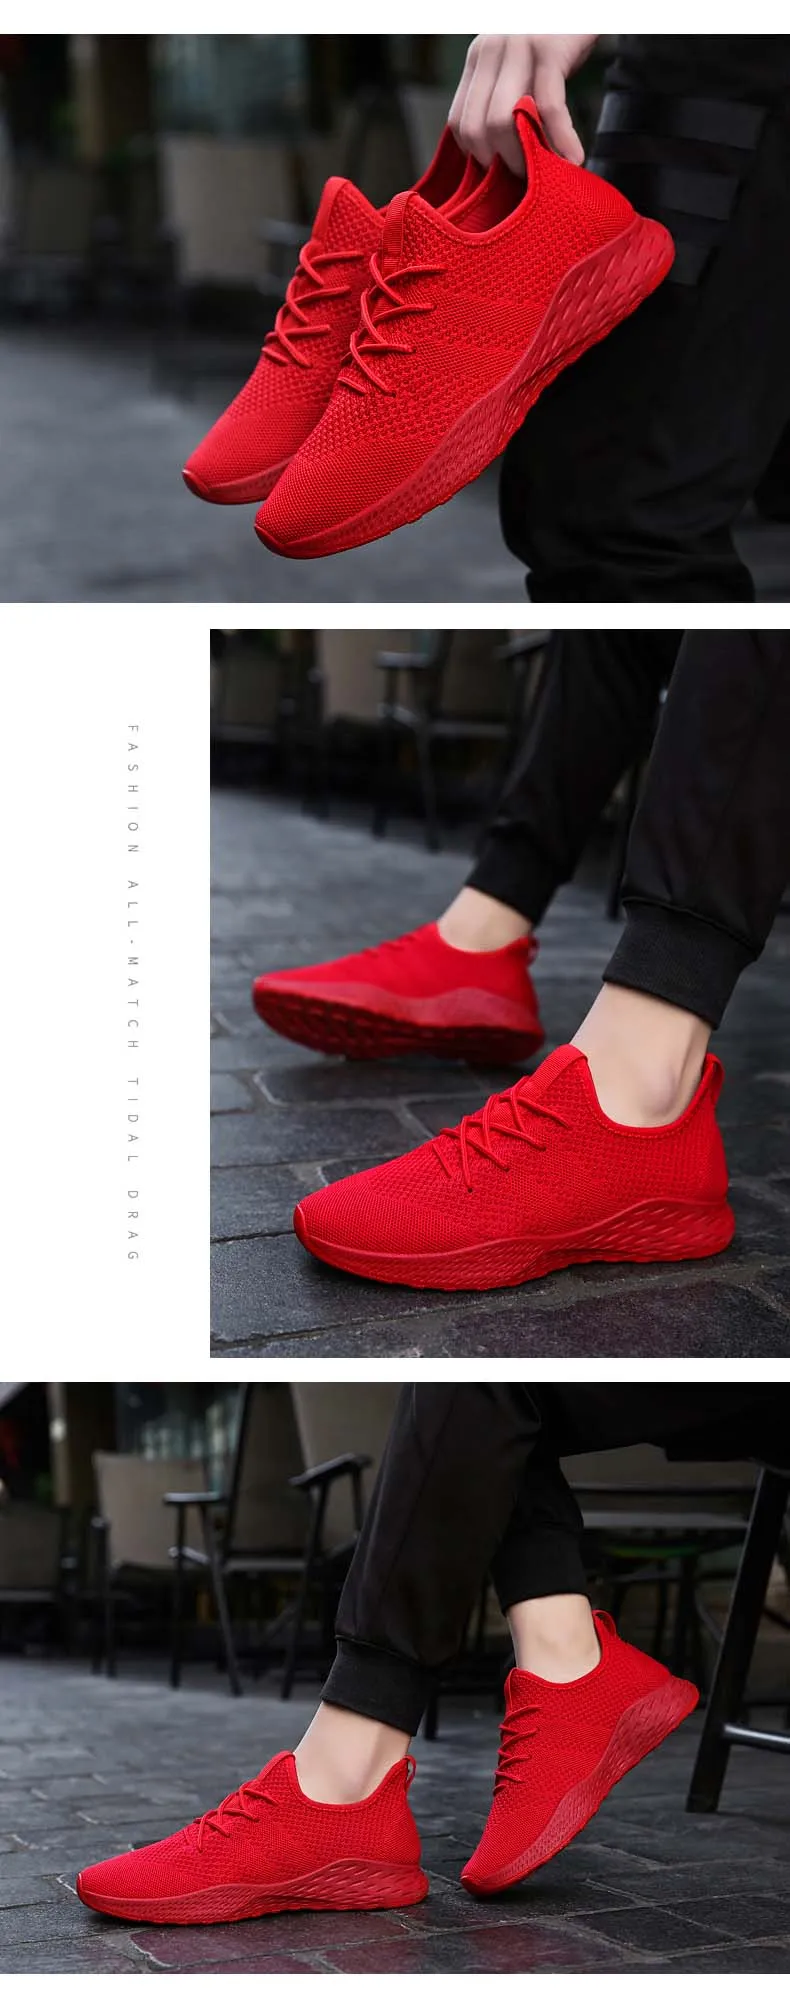 BomKinta новые уличные кроссовки для мужчин спортивная обувь красные черные мужские кроссовки Zapatos corrientes de verano белые